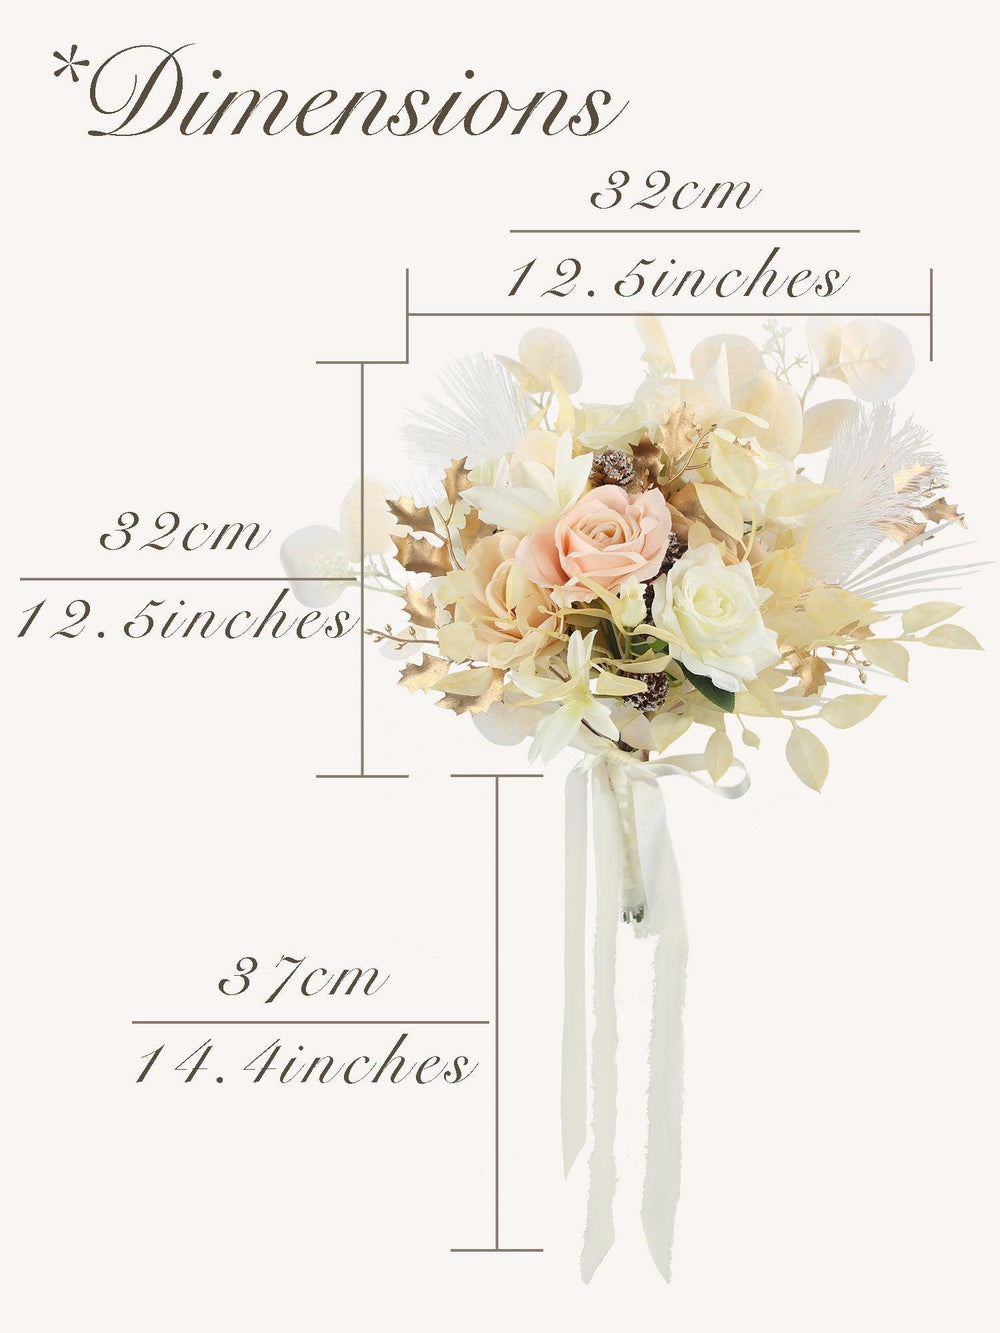 12.5 inch wide White & Beige Bridal Bouquet - Rinlong Flower